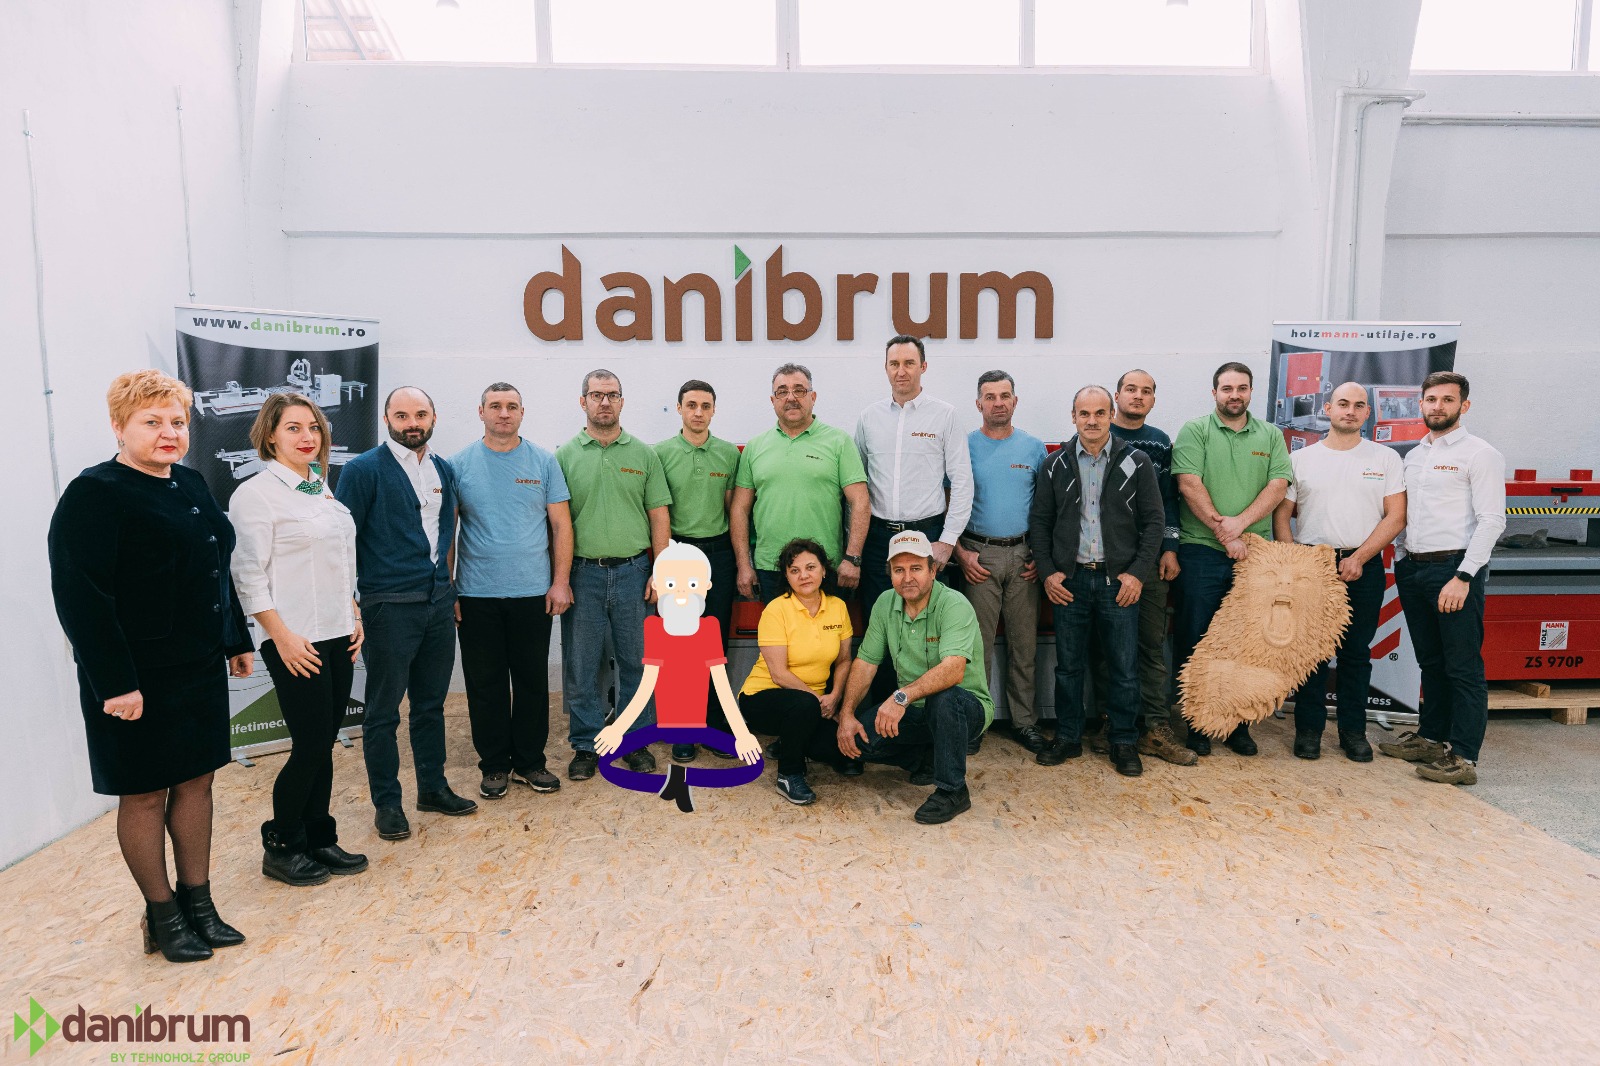 DANIBRUM recomandă tehnologizarea atelierelor și fabricilor la Danibrum